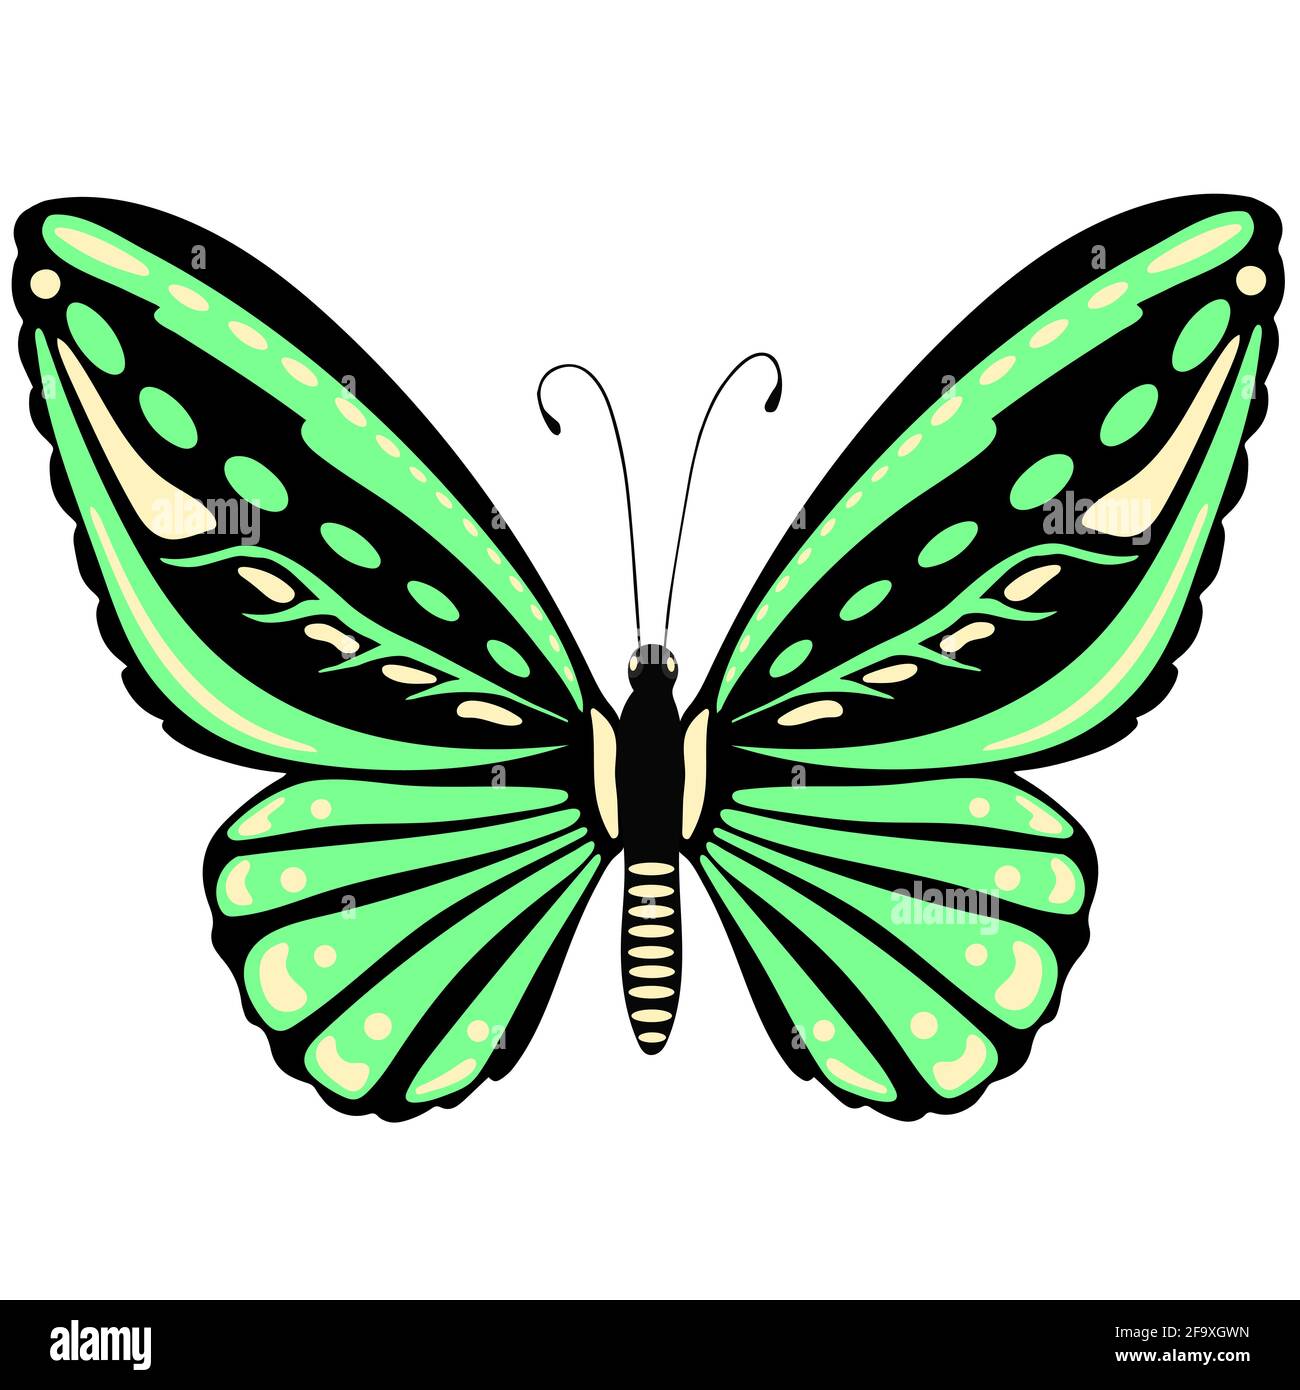 Leuchtend grüner Schmetterling Nahaufnahme. Ein schönes Insekt mit bunten Flügeln. Vektor.isoliertes Objekt. Freihandzeichnung. Stock Vektor